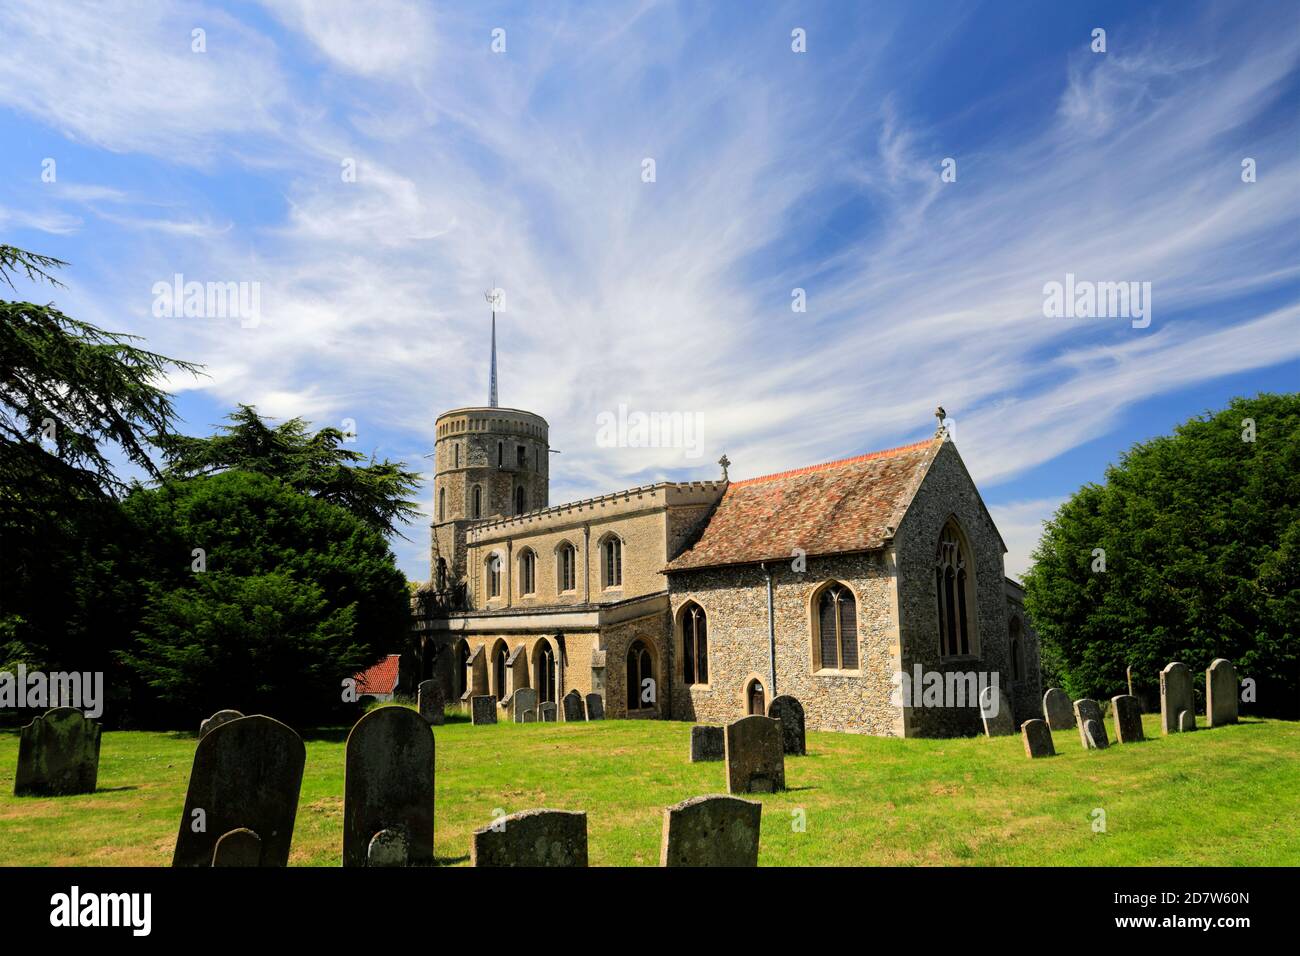 Summer view of St Marys church, Swaffham village, Cambridgeshire; England, UK Stock Photo